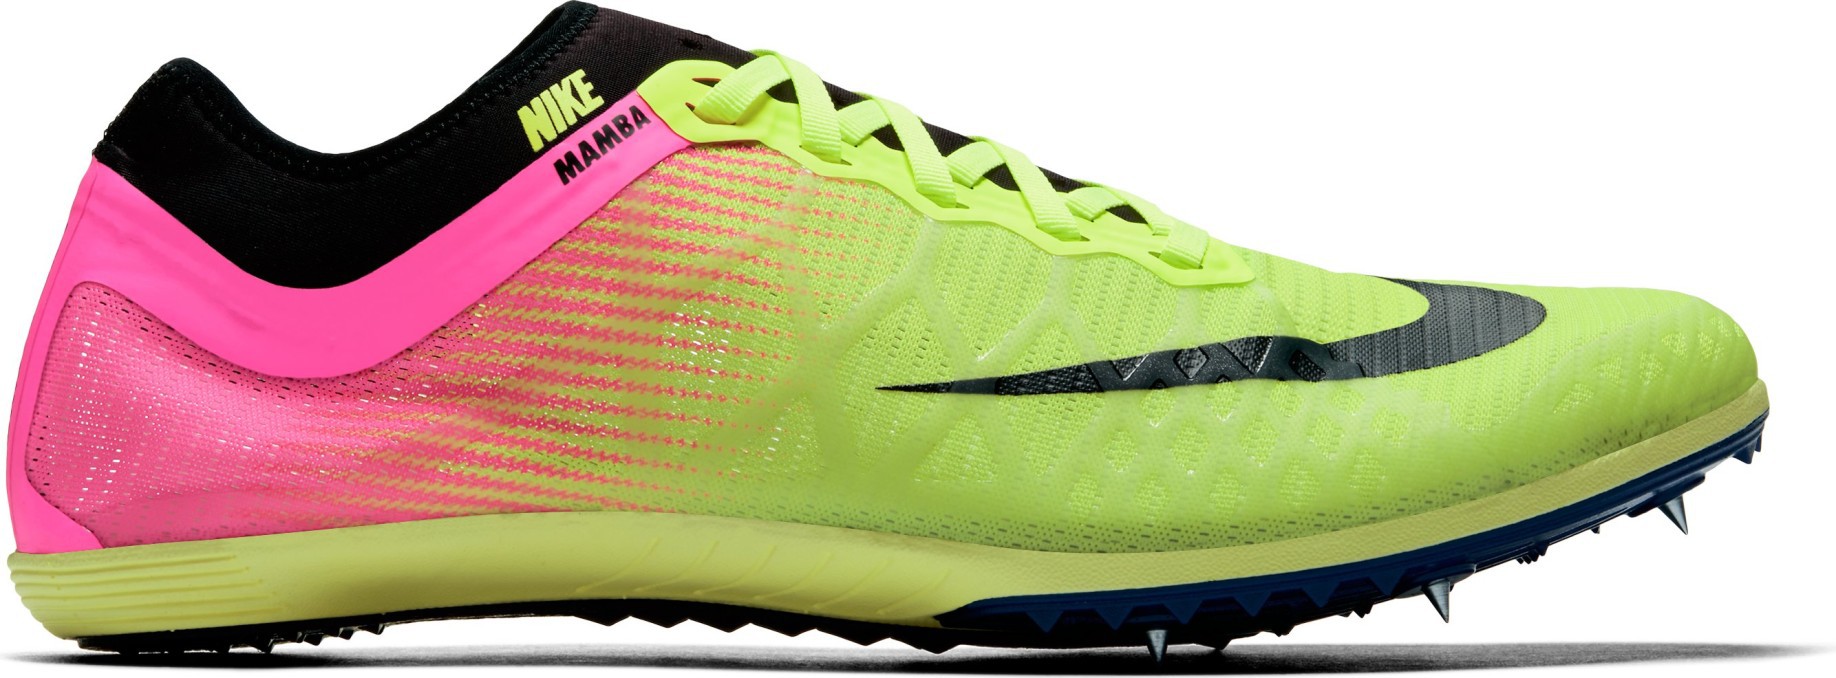 El Zapato De Hombre Mamba 3 colore amarillo - Nike - SportIT.com